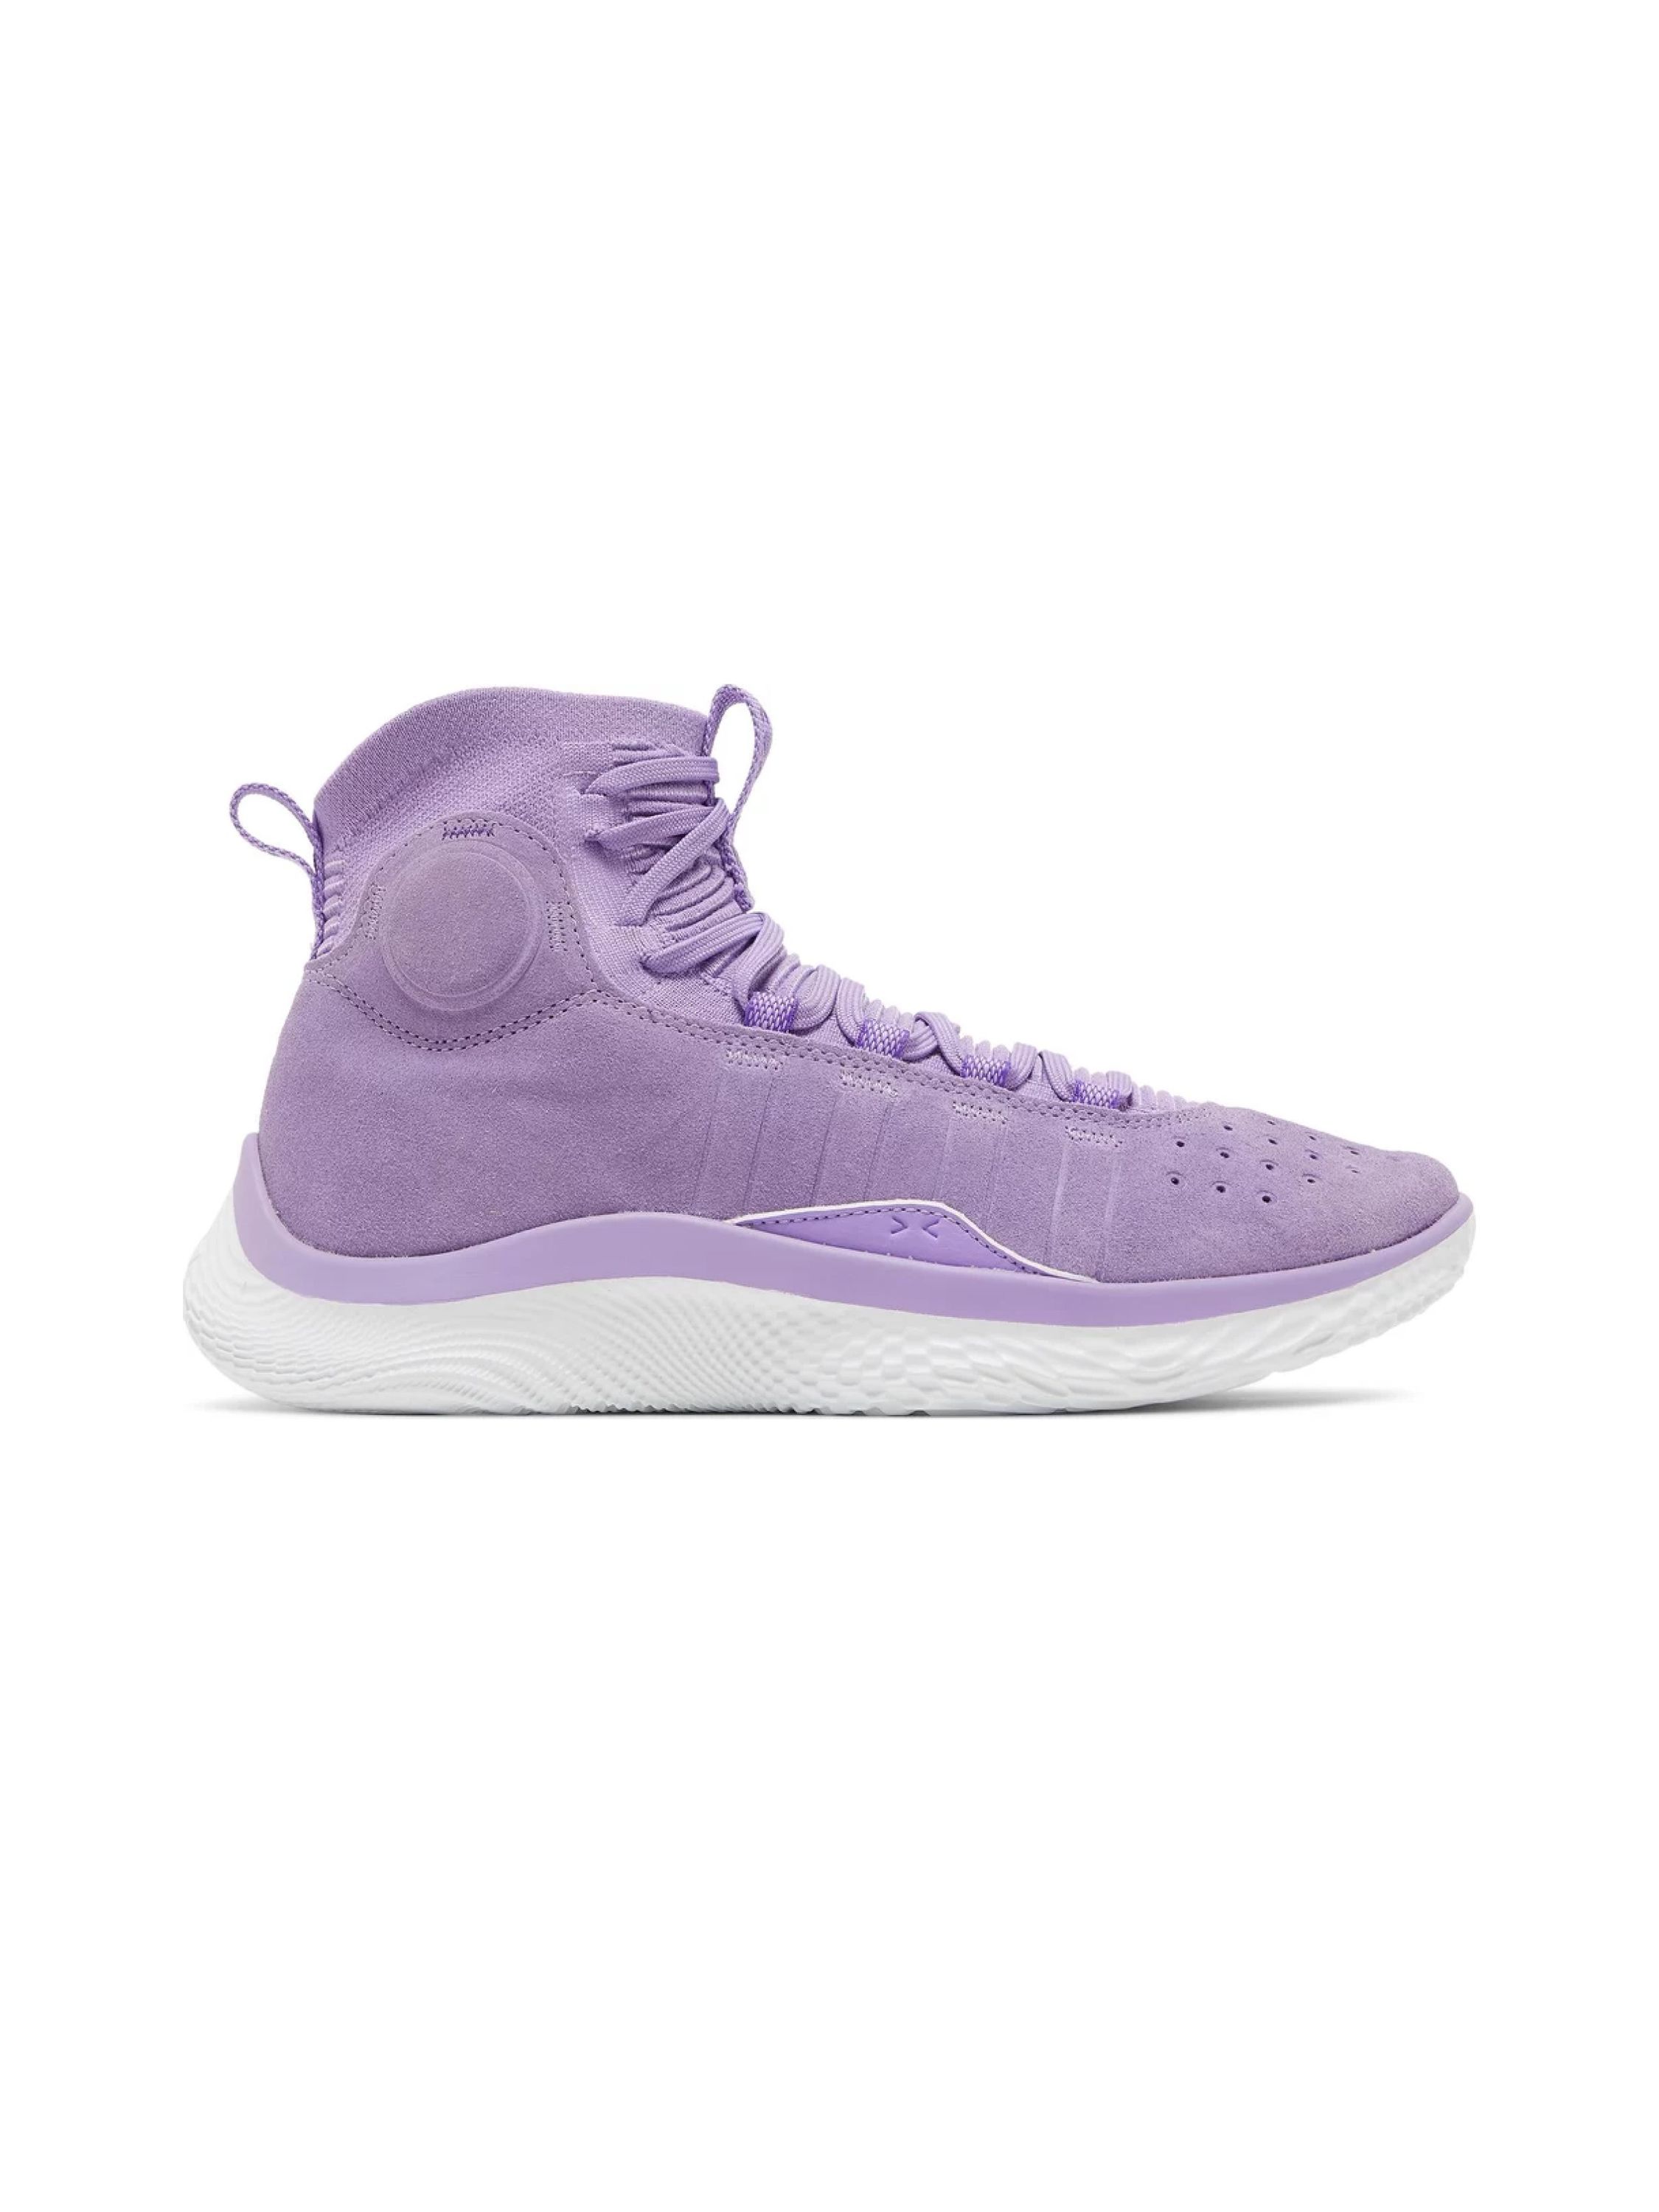 Kobe Bryant Lakers 07 Gift NBA Team Sneakers Custom Name Air Jordan 13 Shoes  For Fans